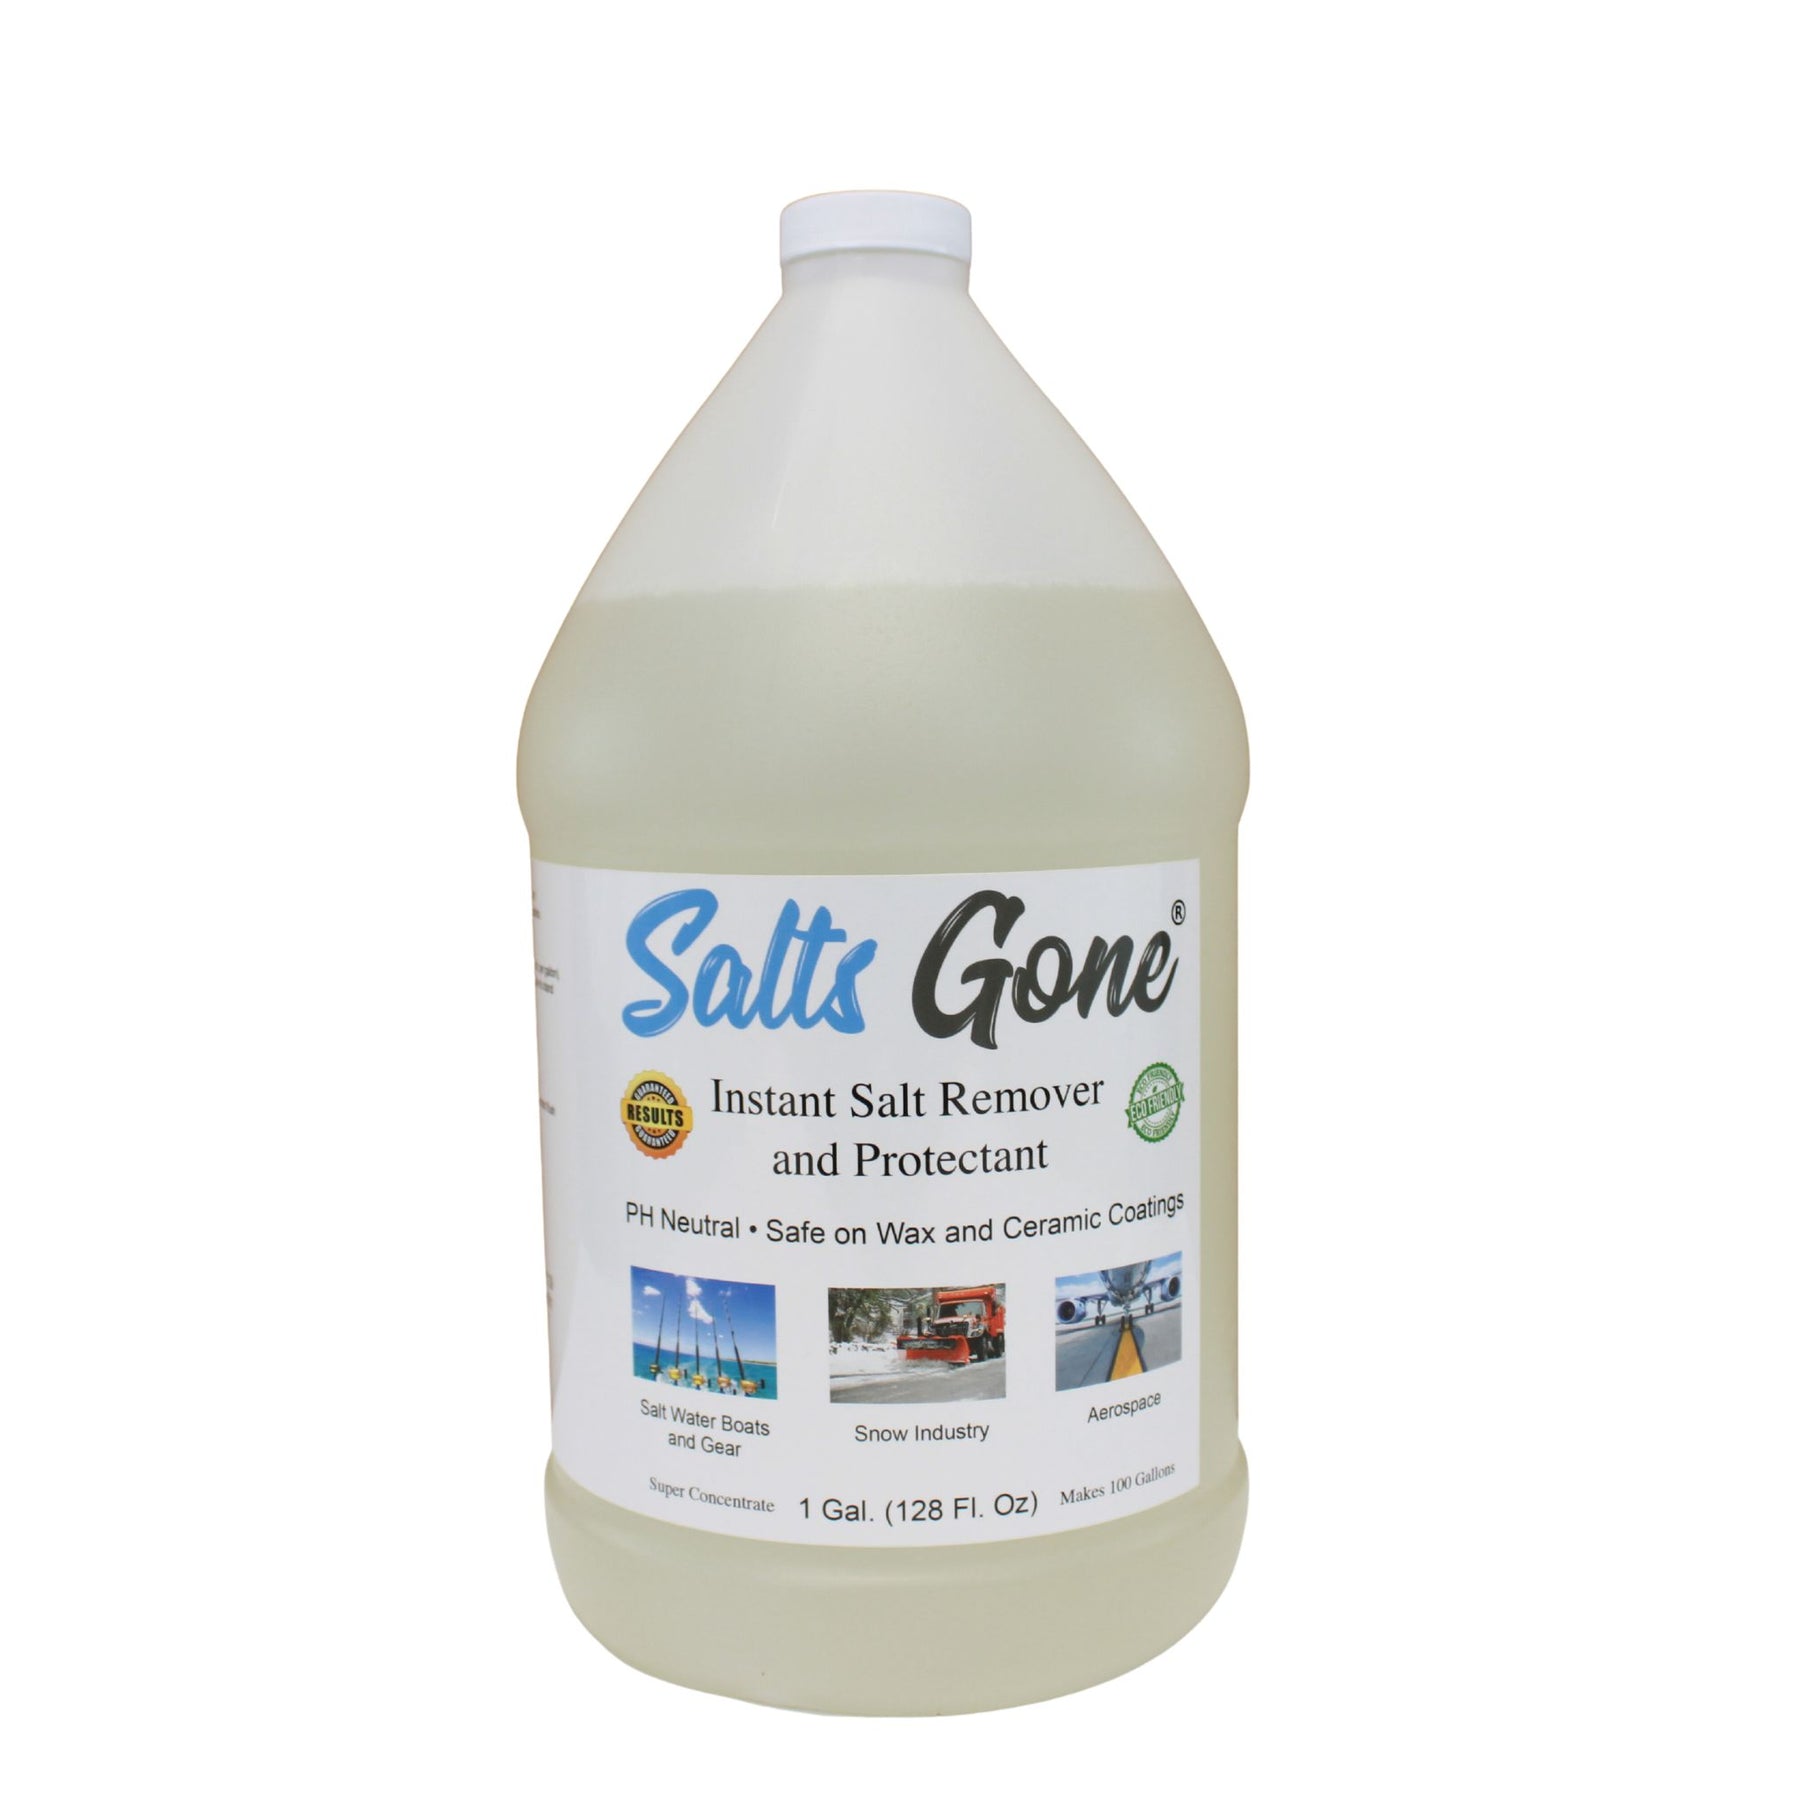 Combination Pack: 2 Gallons Salts Gone™, Hose End Sprayer, Motor Flush